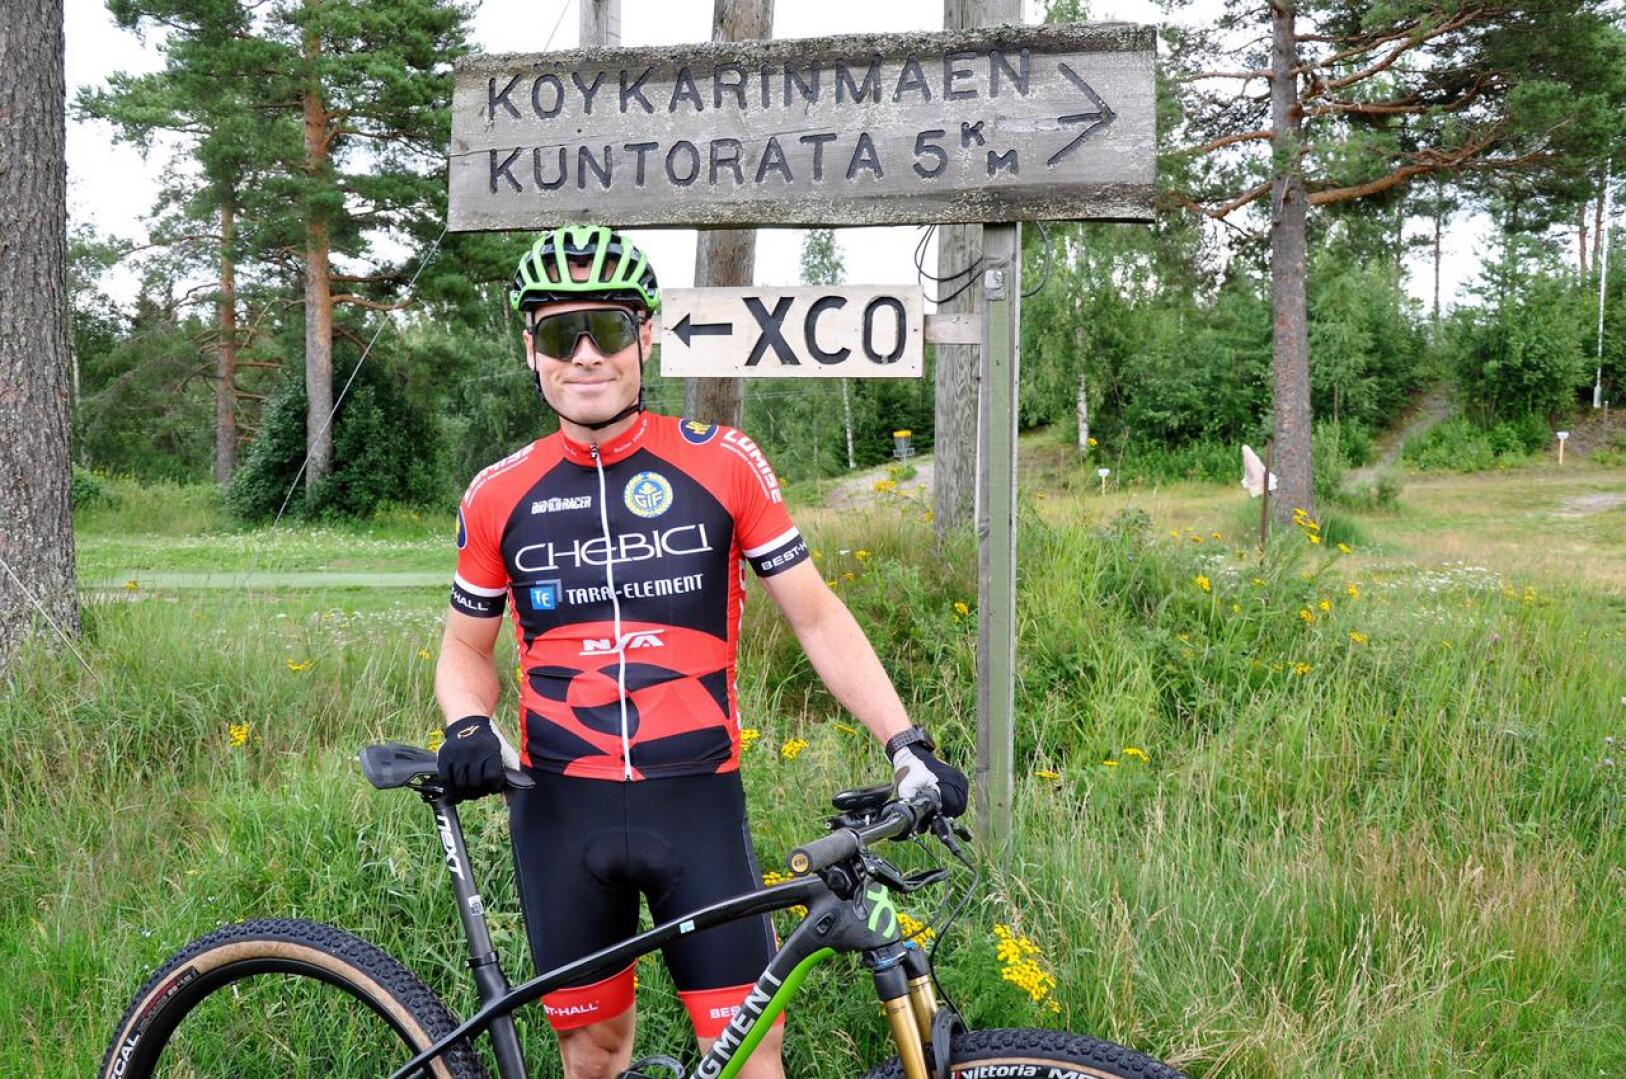 Antti Tuukkanen toivoo, että lähiseudun asukkaat tulevat innolla seuraamaan maastopyöräilyn SM-kisoja Köykäriin.